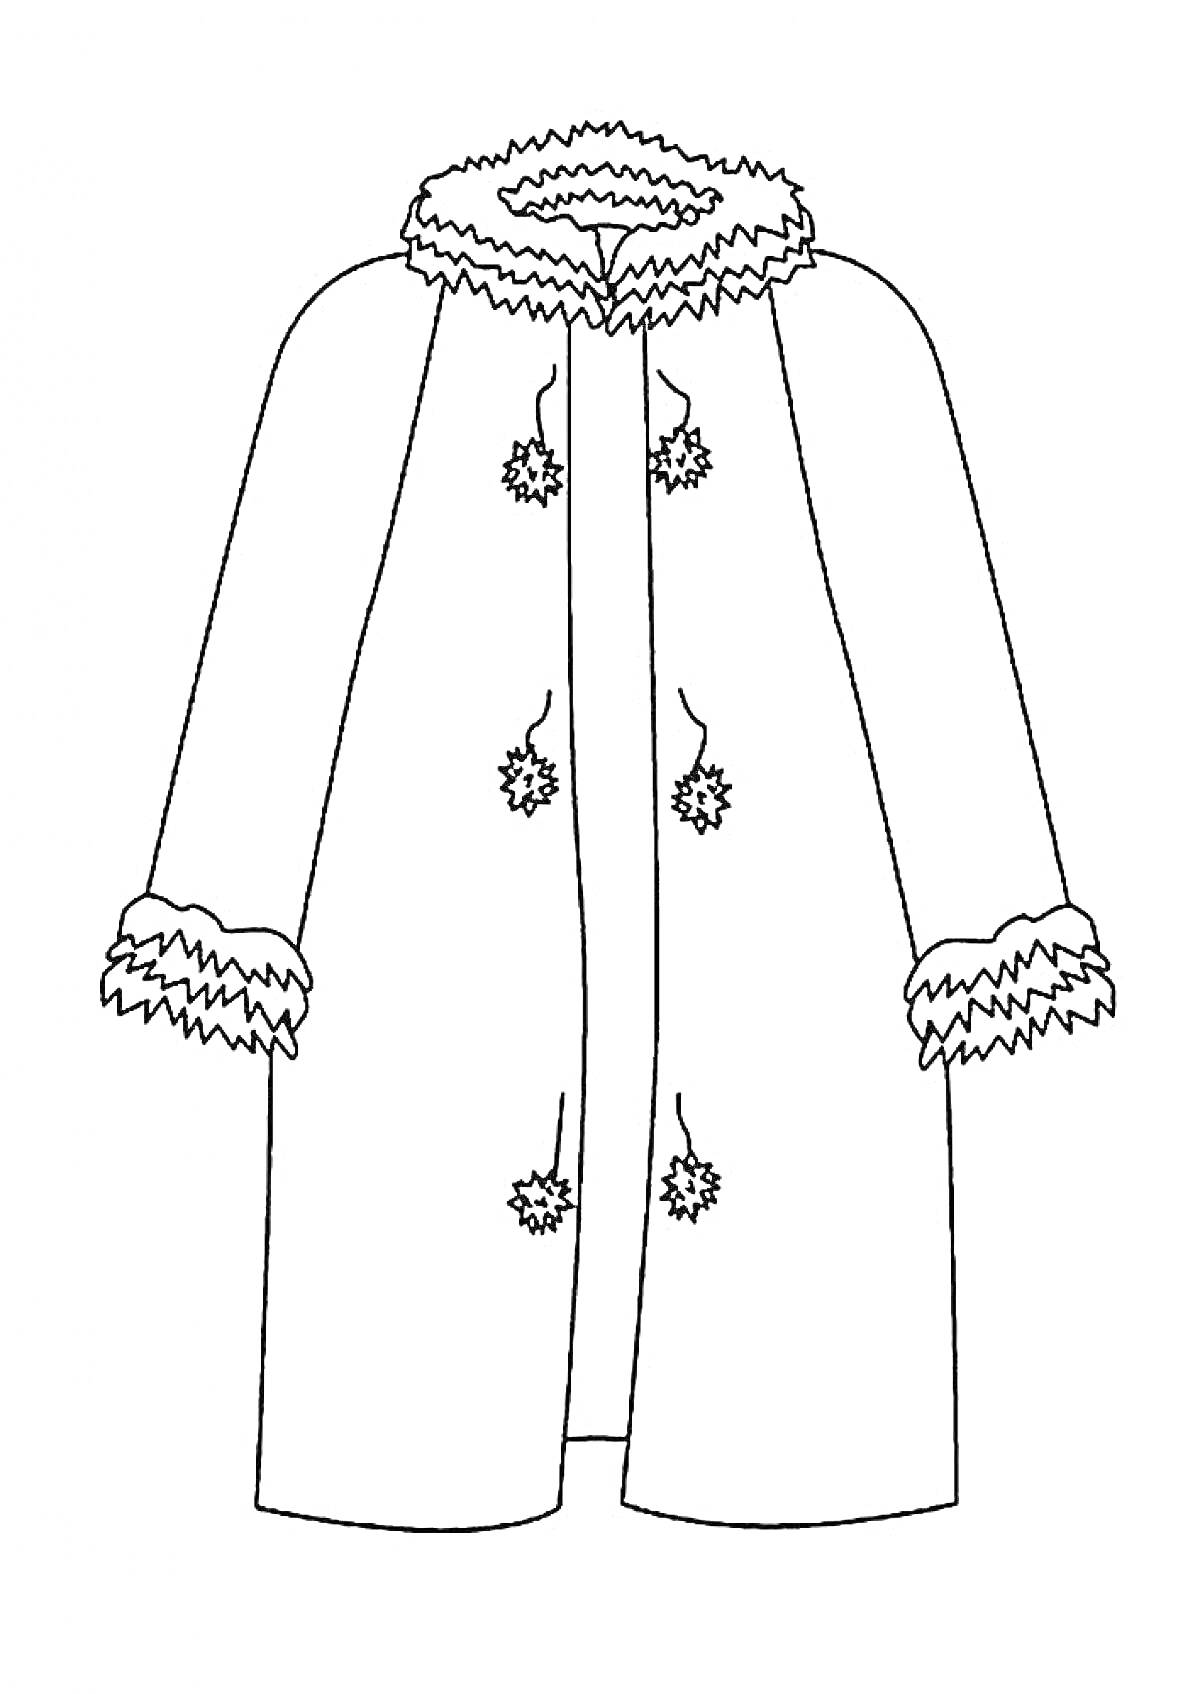 Раскраска Пальто с отделкой мехом на воротнике, манжетах и пуговицах